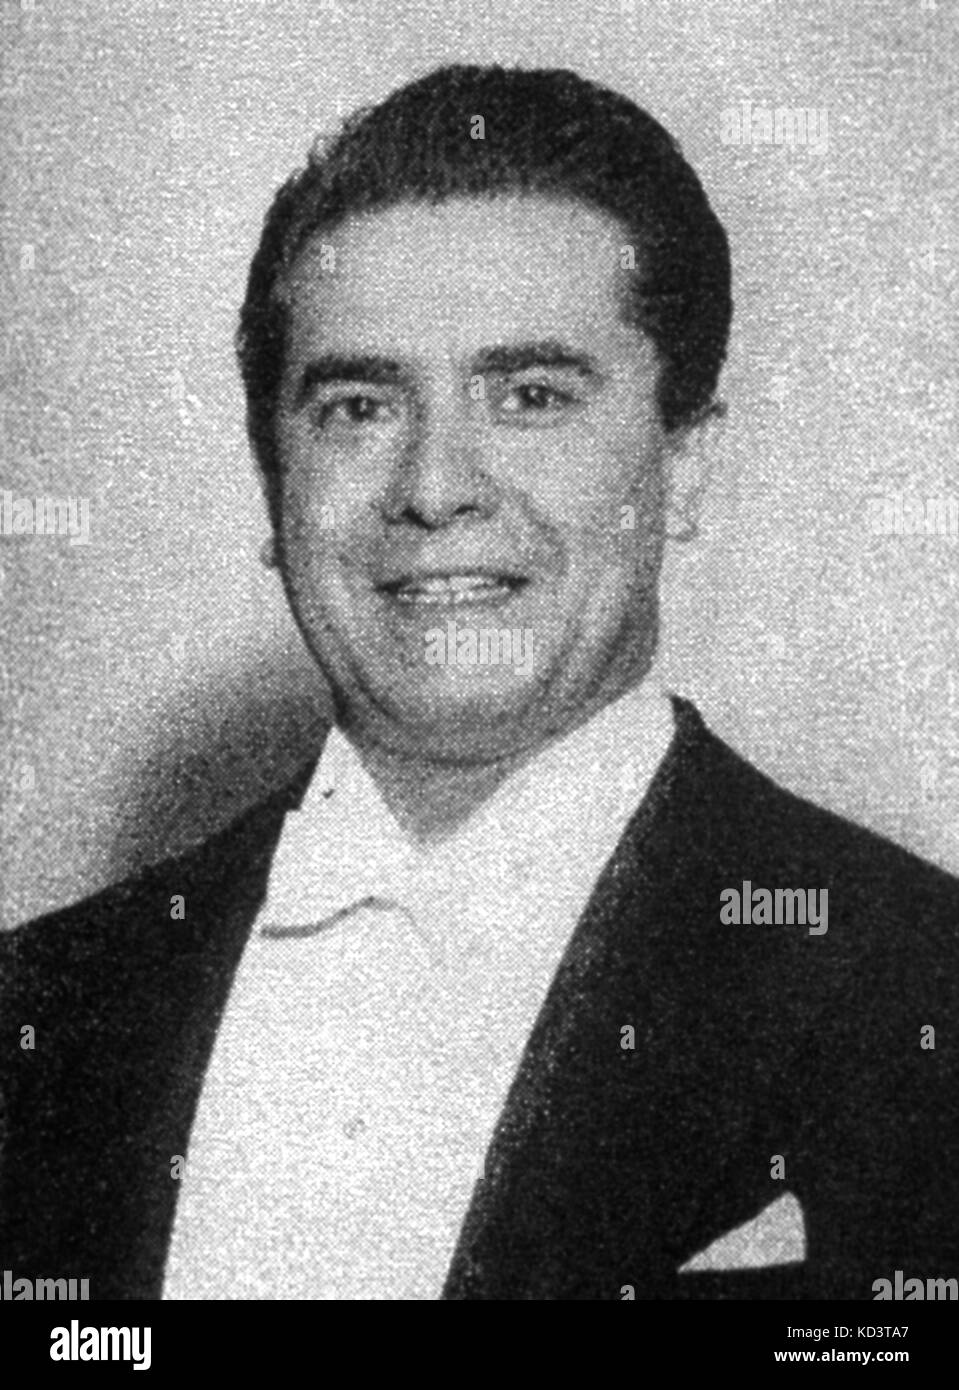 DI STEFANO, Giuseppe - portrait - publicité Musical America. Décembre 1963 ténor italien, 1921- Banque D'Images